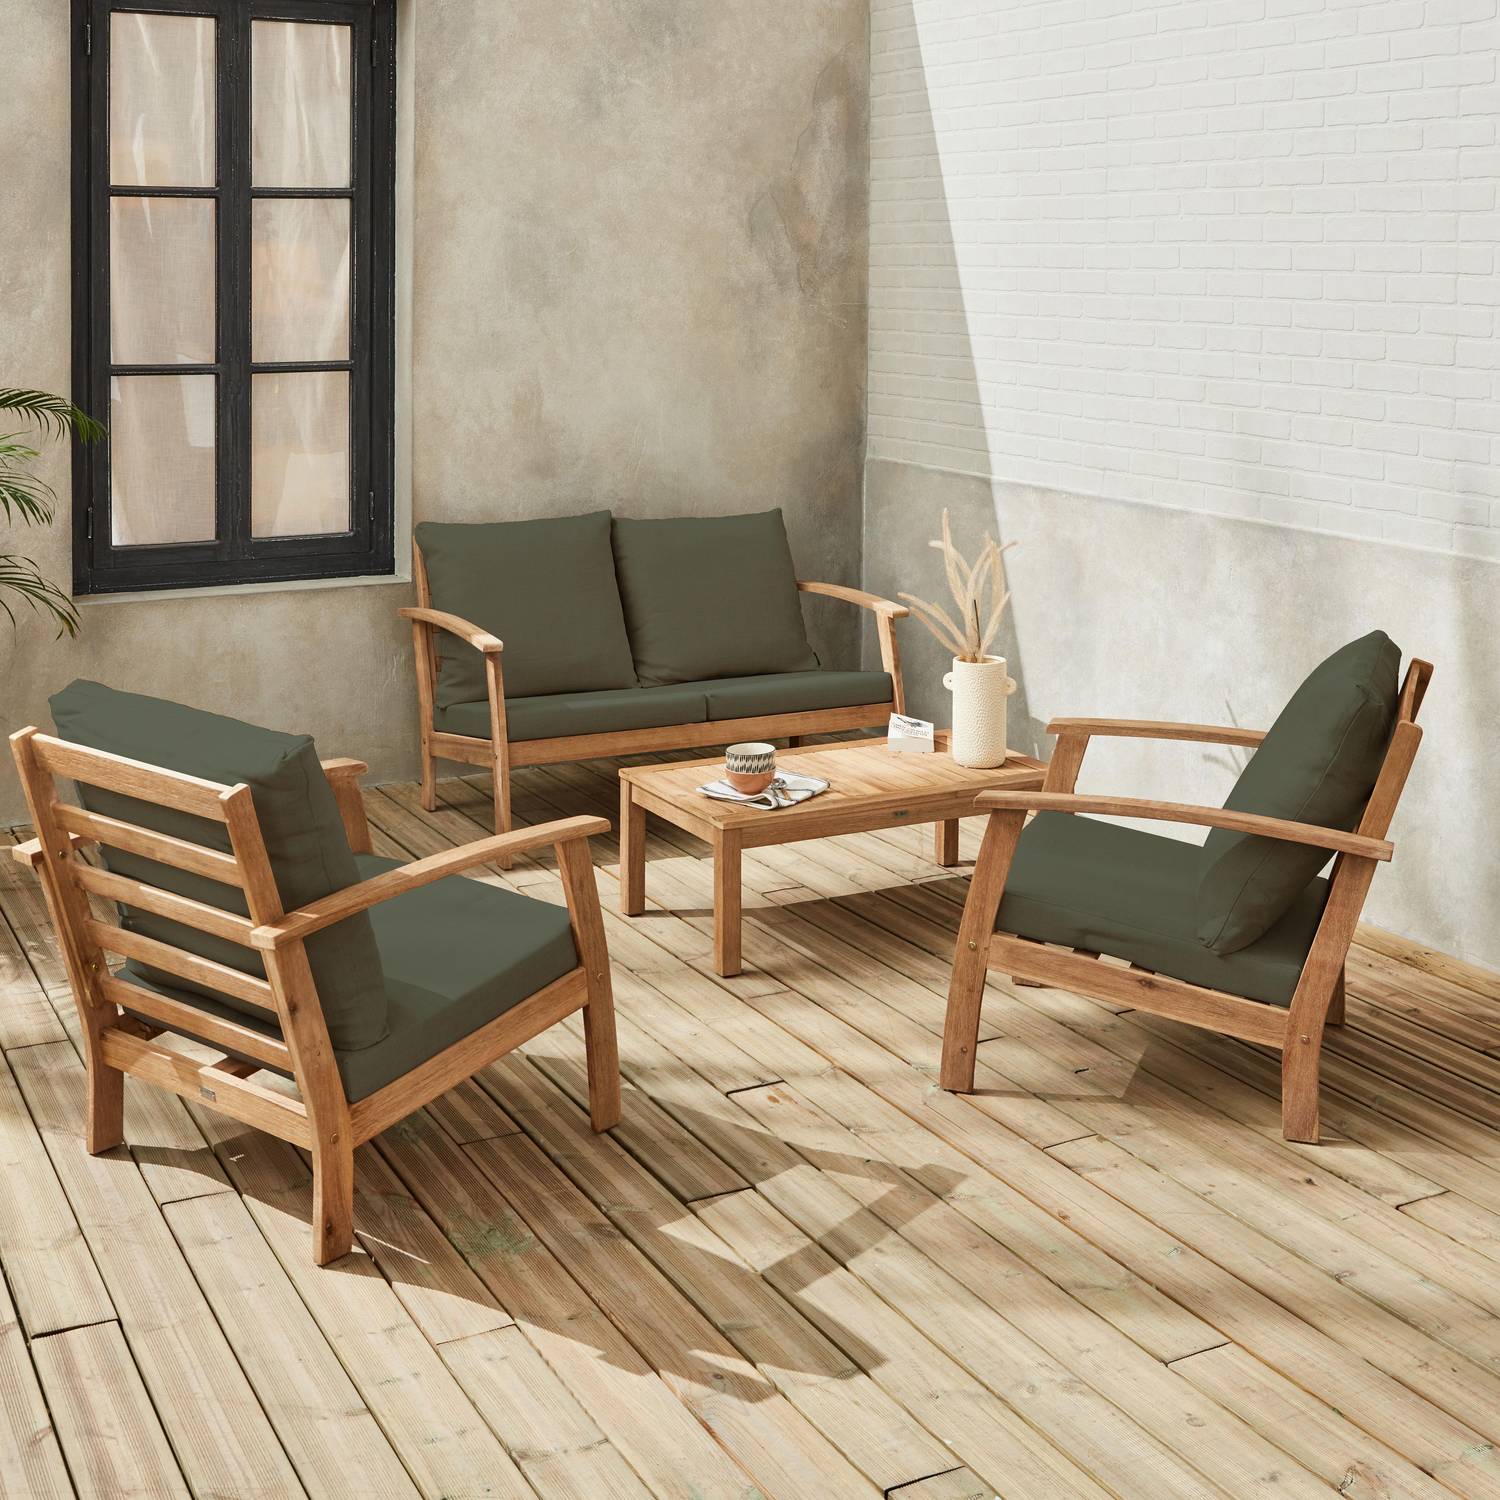 Salon de jardin en bois 4 places - Ushuaïa - Coussins Savane, canapé, fauteuils et table basse en acacia, design Photo1